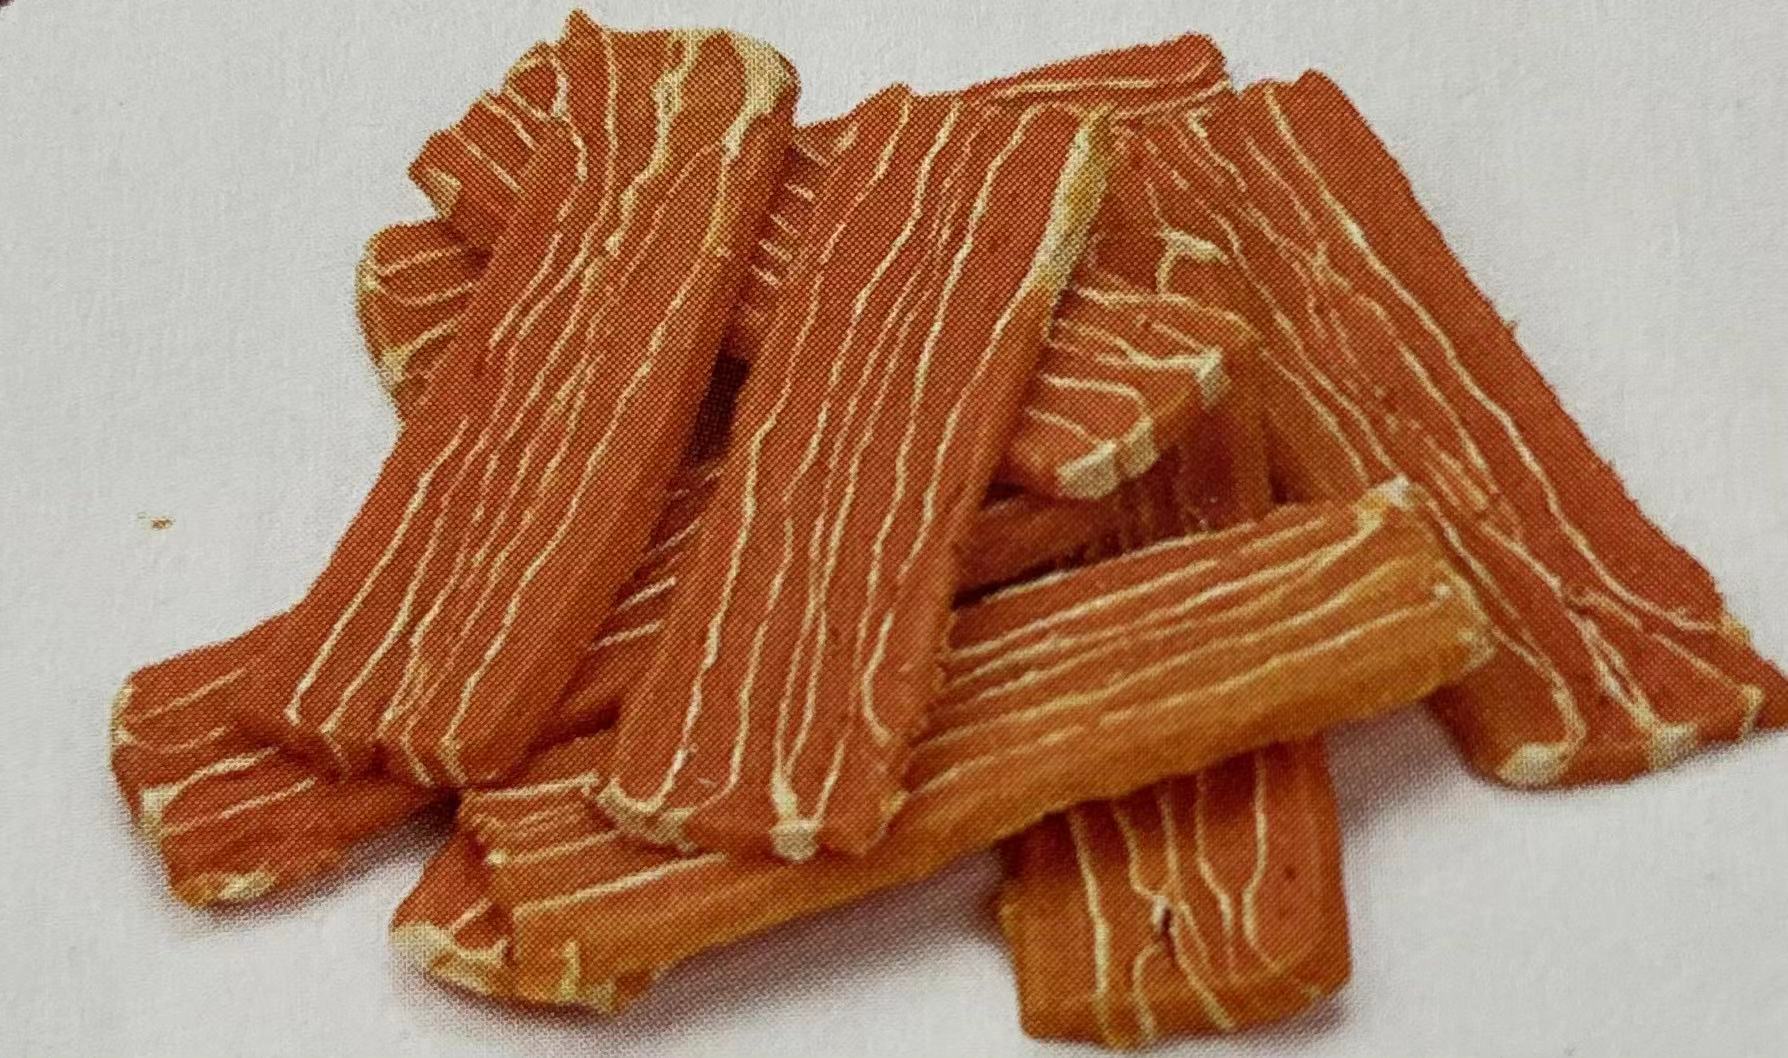 Snowflakes salmon slices